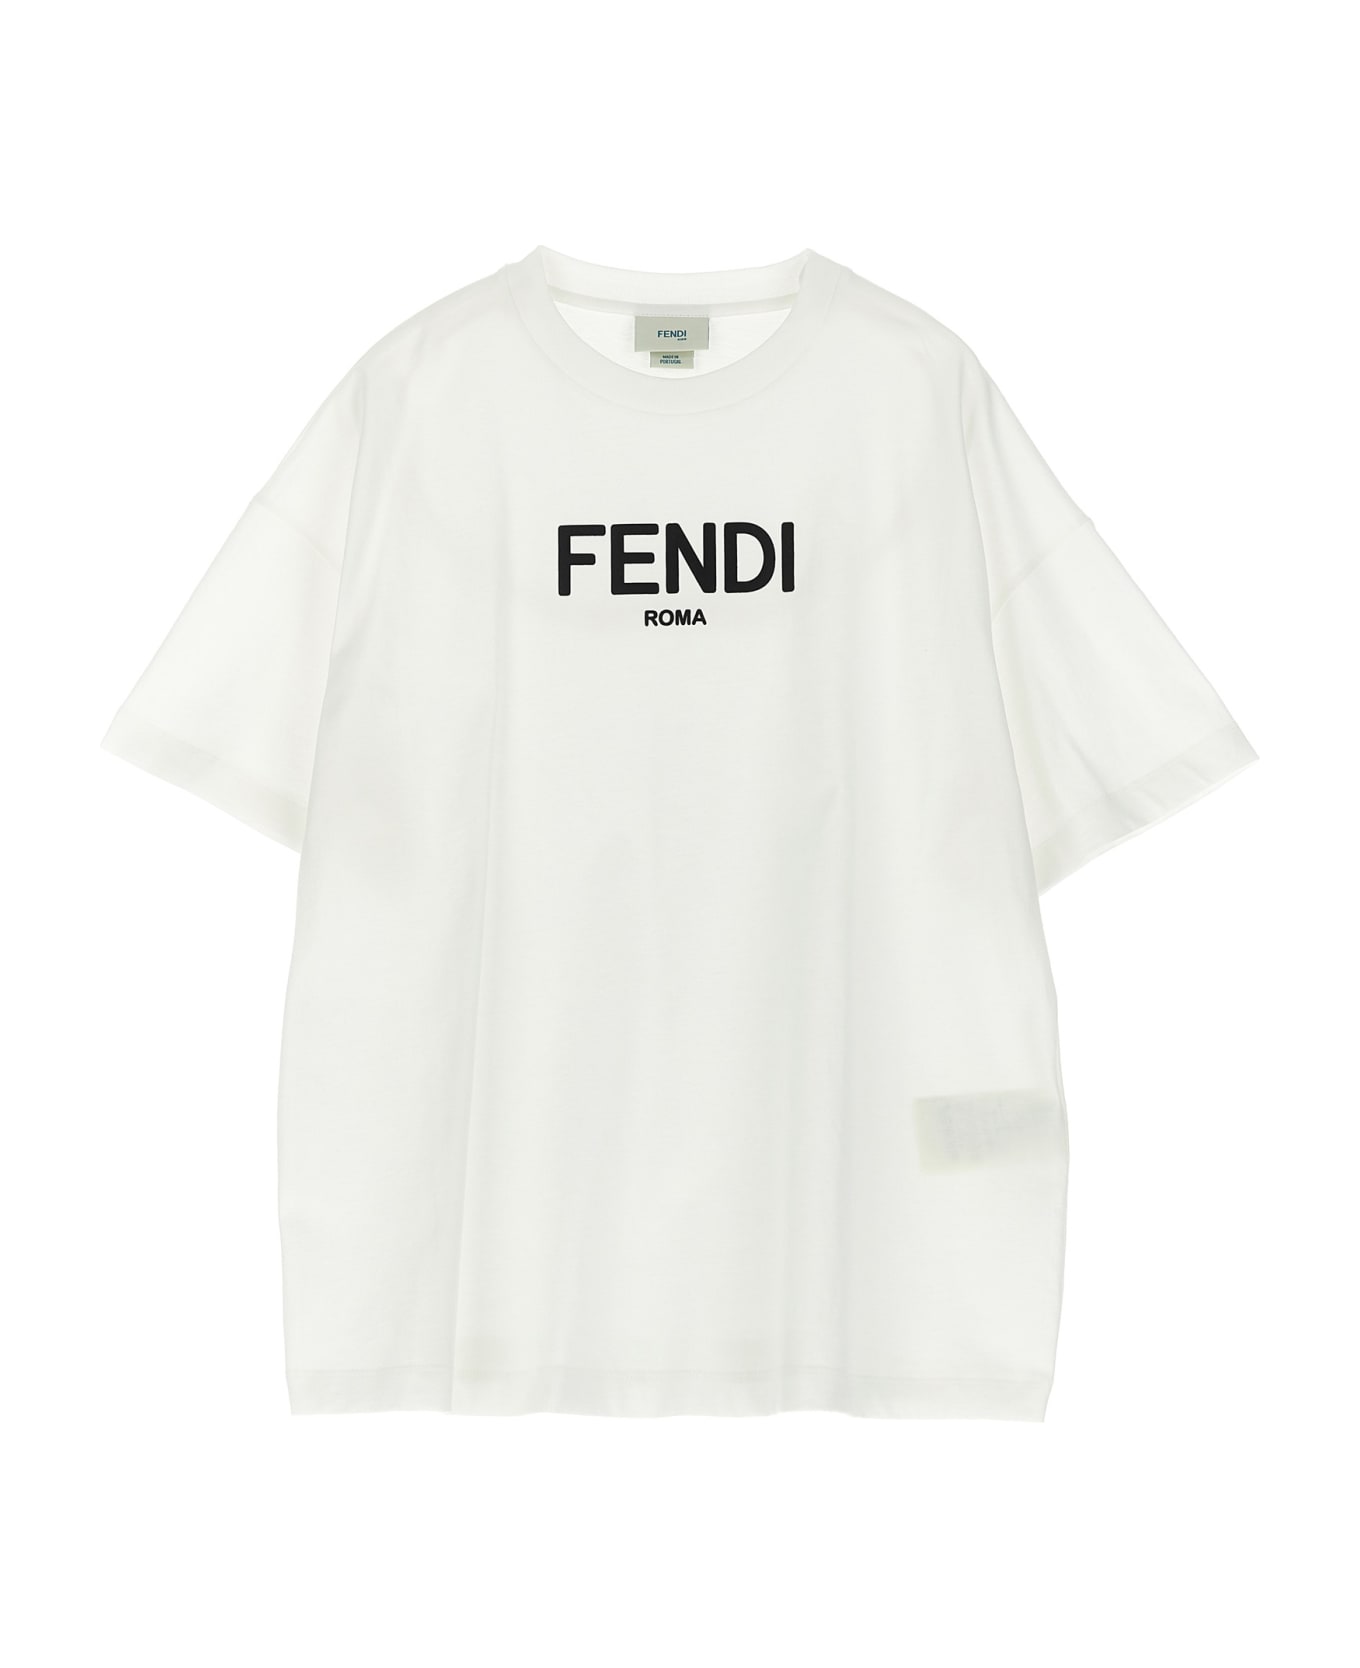 Fendi Logo T-shirt - White/Black